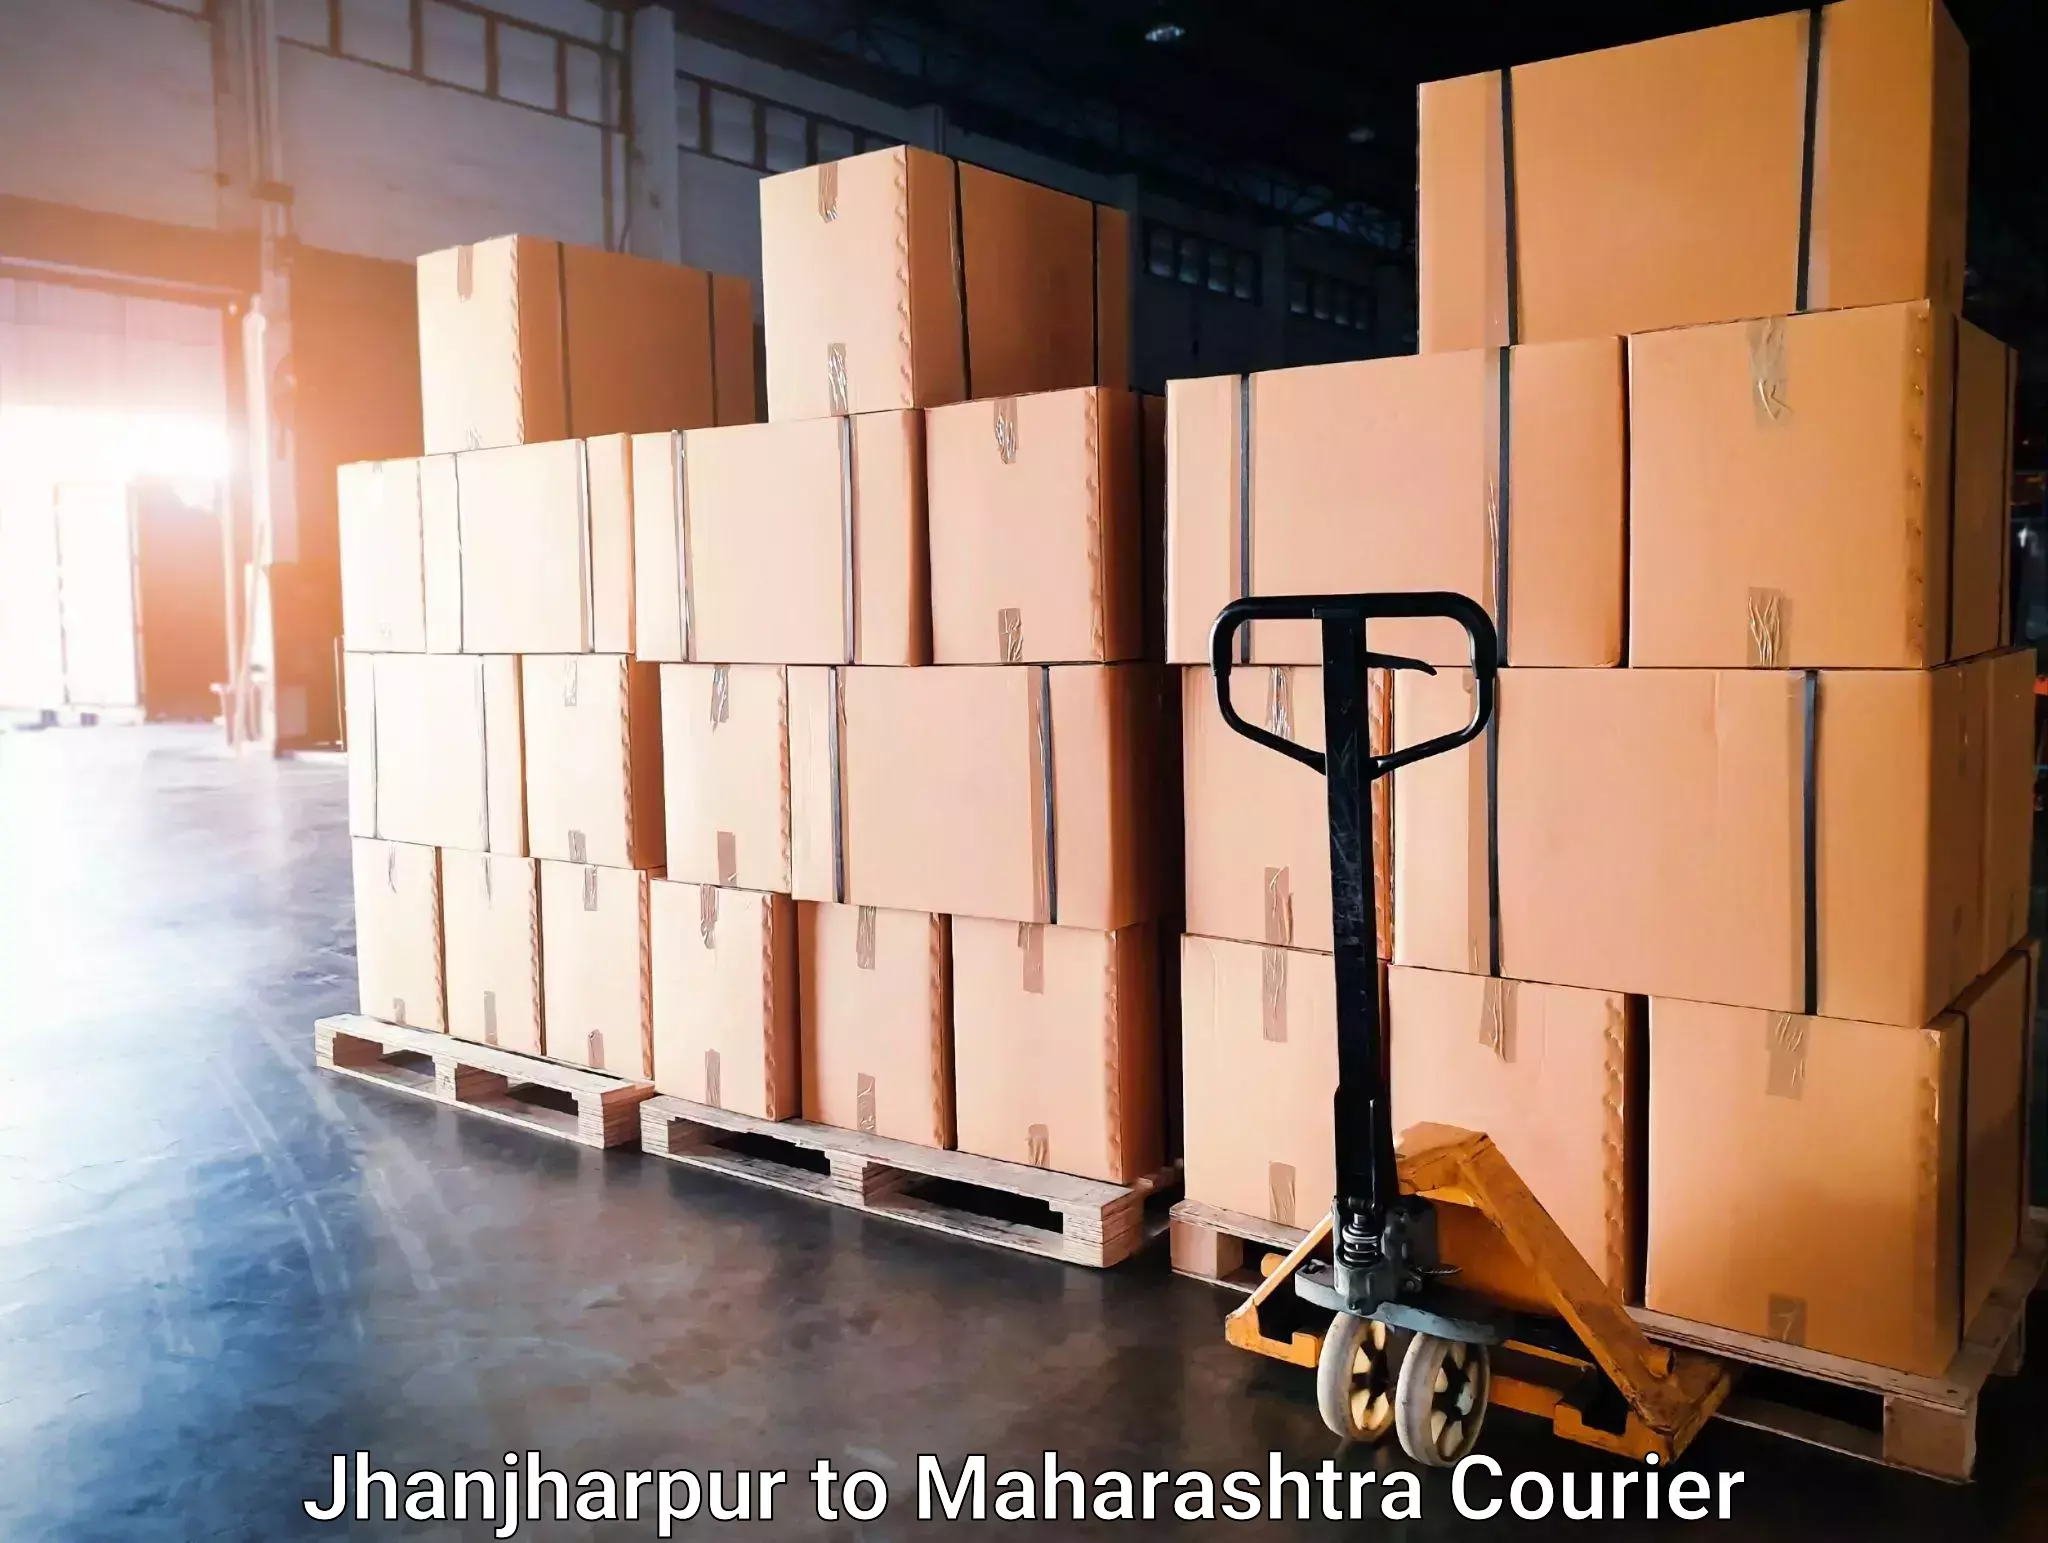 Seamless moving process in Jhanjharpur to Wani